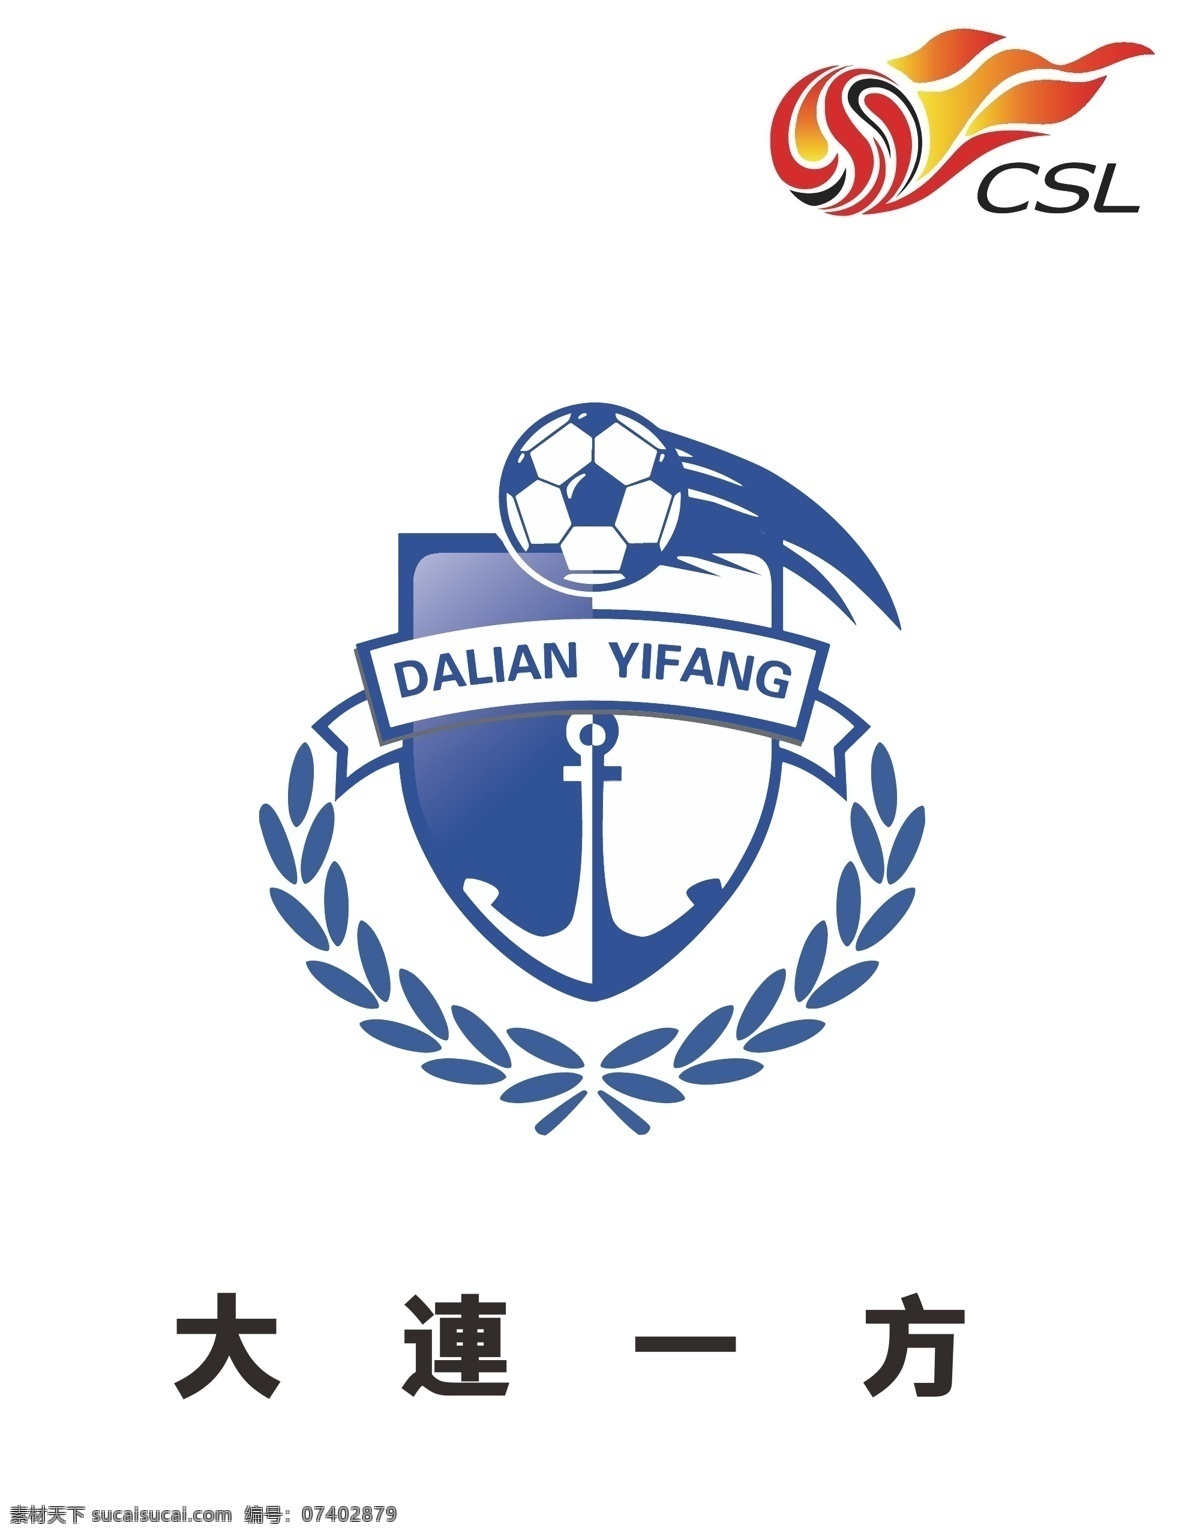 中国超级联赛 大连 一方 logo 中国足球 男足 标识 标志 球队 足球 足球队 队员 明星 队标 中超 健身 健康 健体 体育 运动 超级 联赛 俱乐部 职业 球场 logo设计